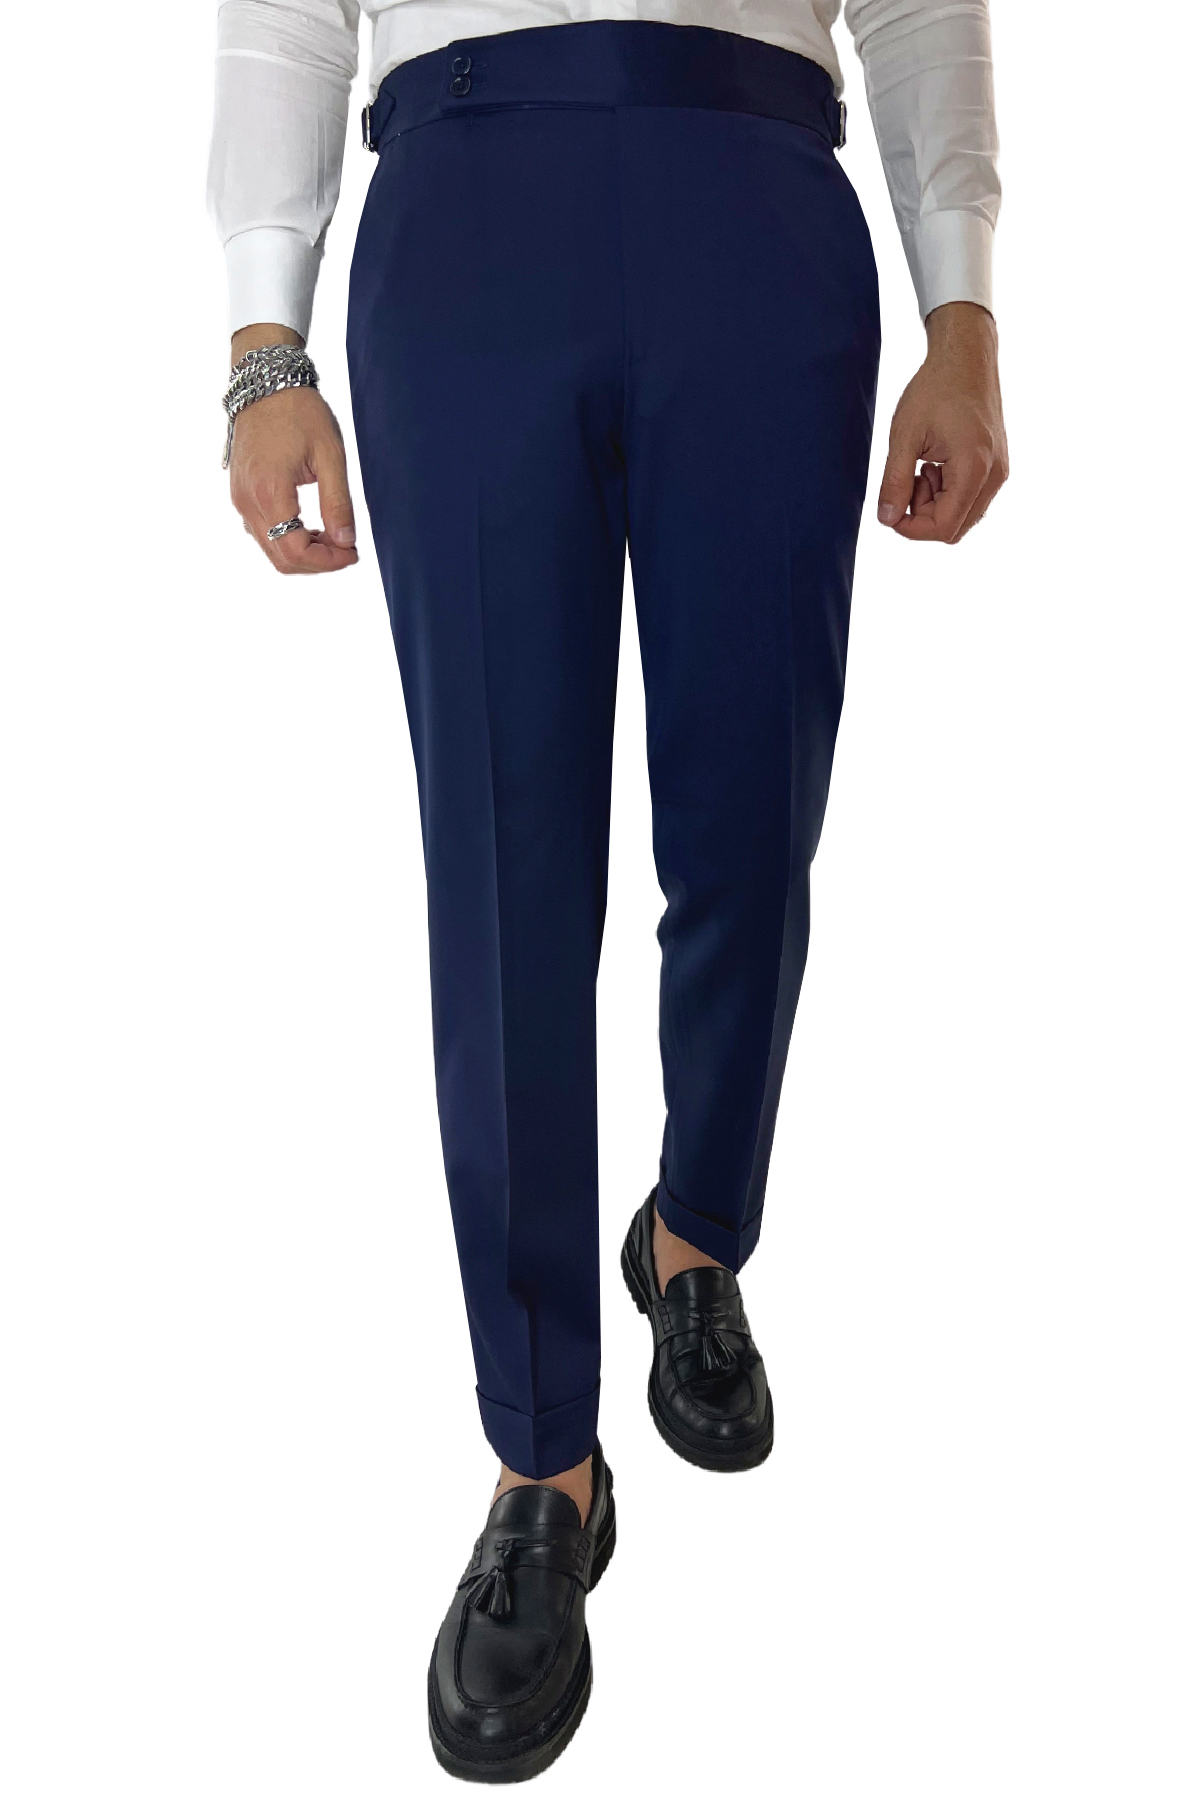 Pantalone uomo royal blu vita alta tasca america in fresco lana 100% Vitale Barberis Canonico fibbie laterali e risvolto 4cm